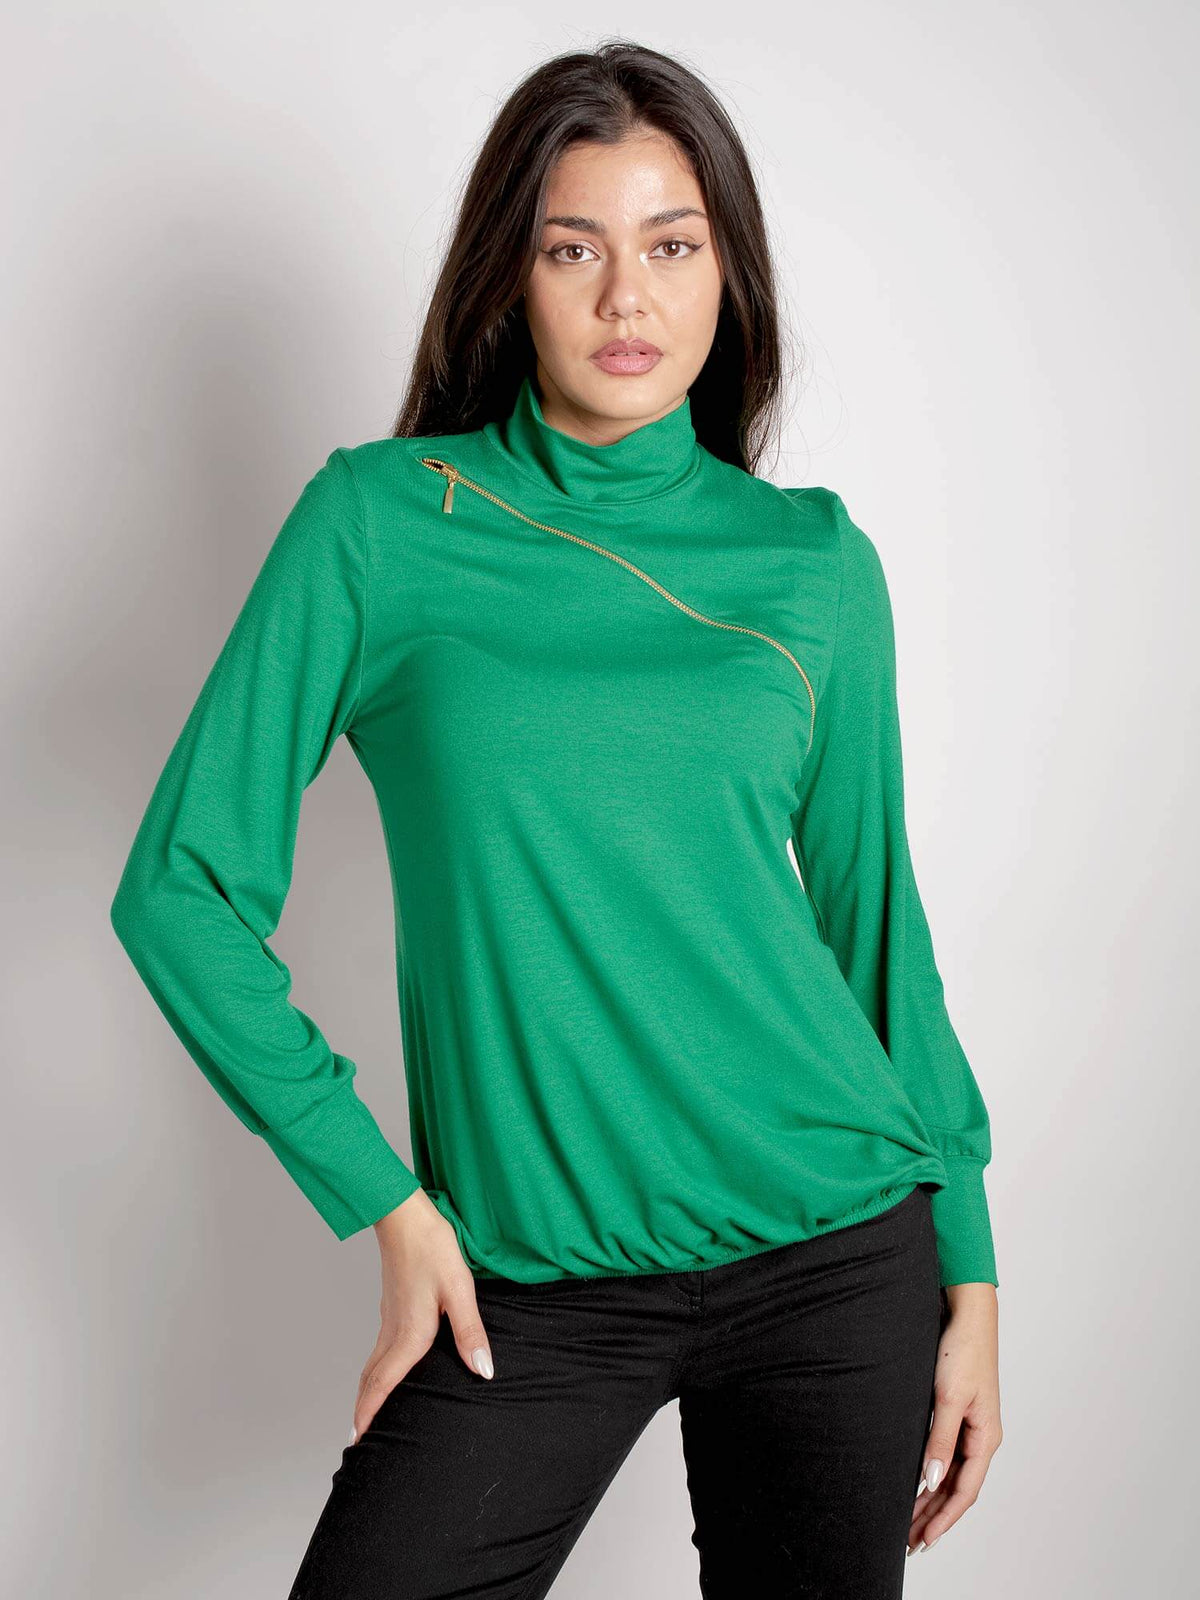 Μπλούζα με φερμουάρ πράσινο